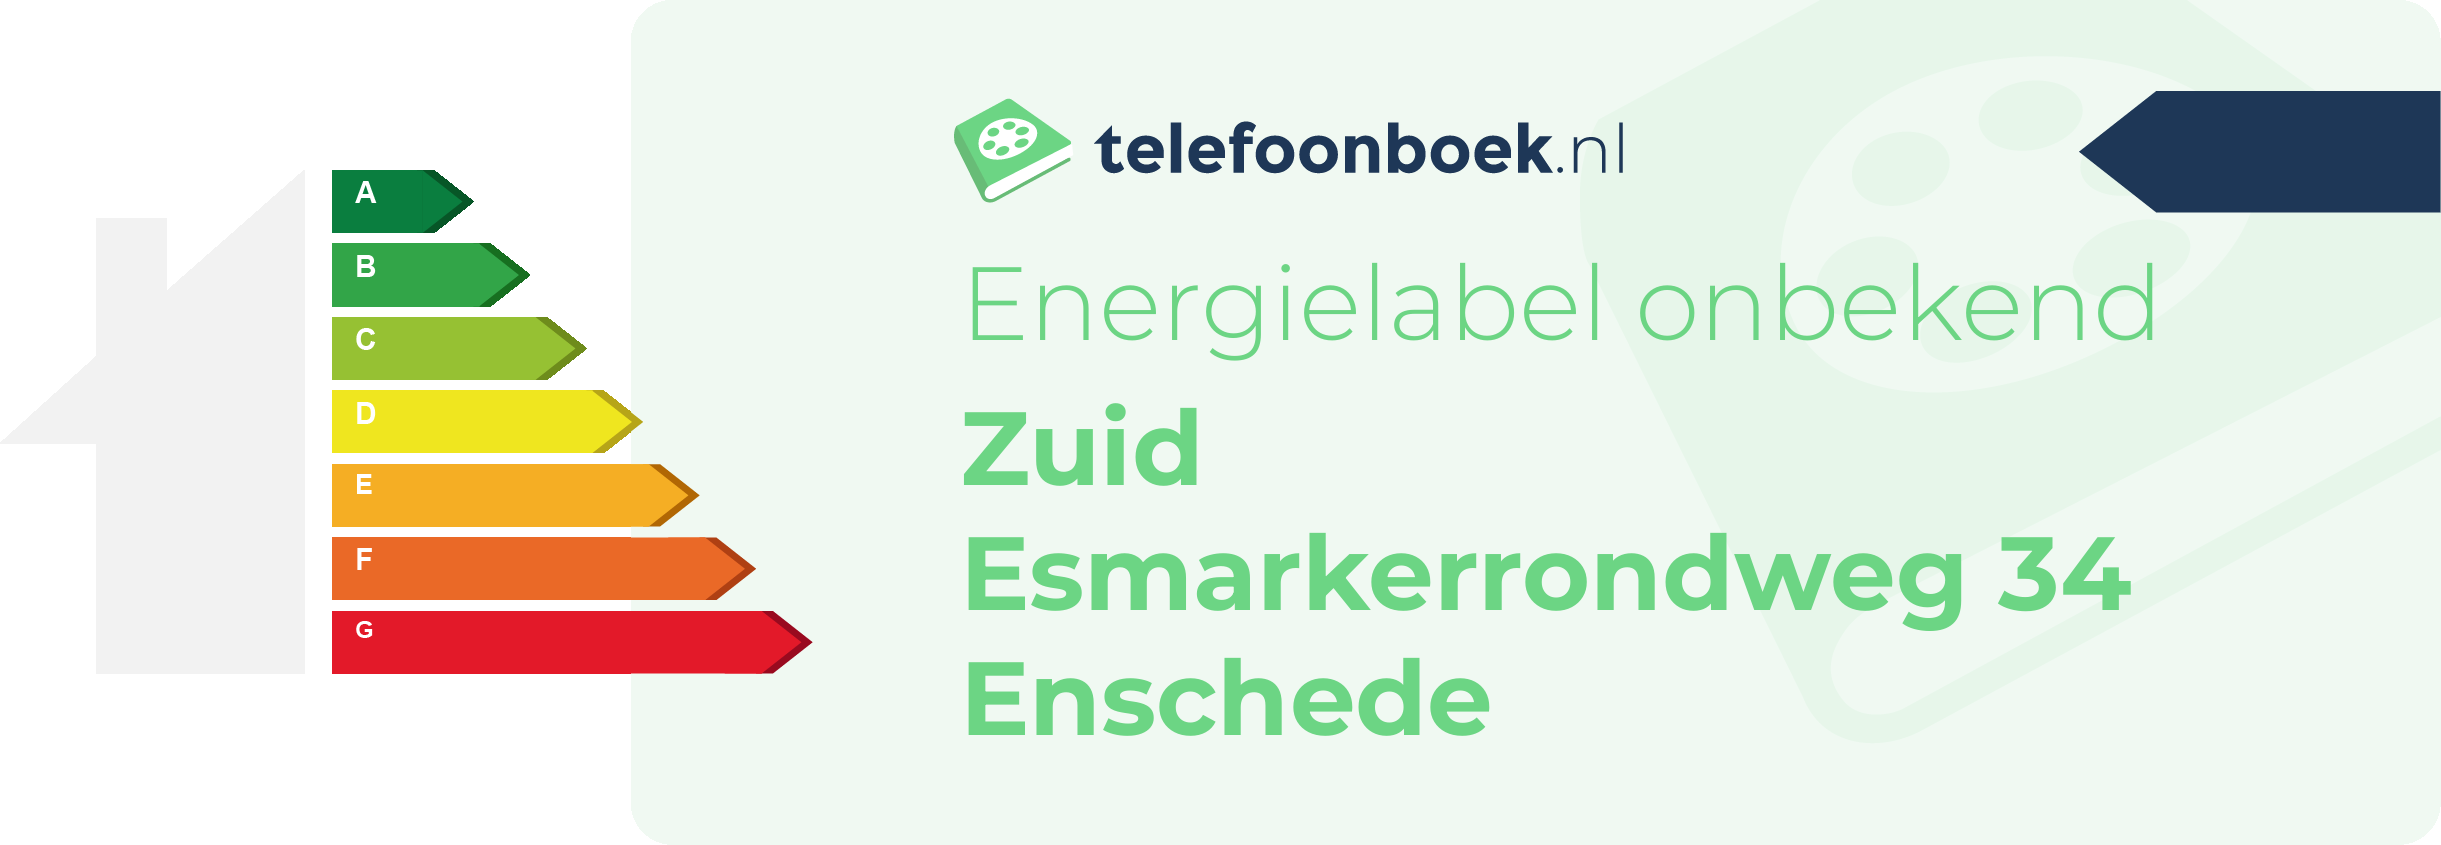 Energielabel Zuid Esmarkerrondweg 34 Enschede